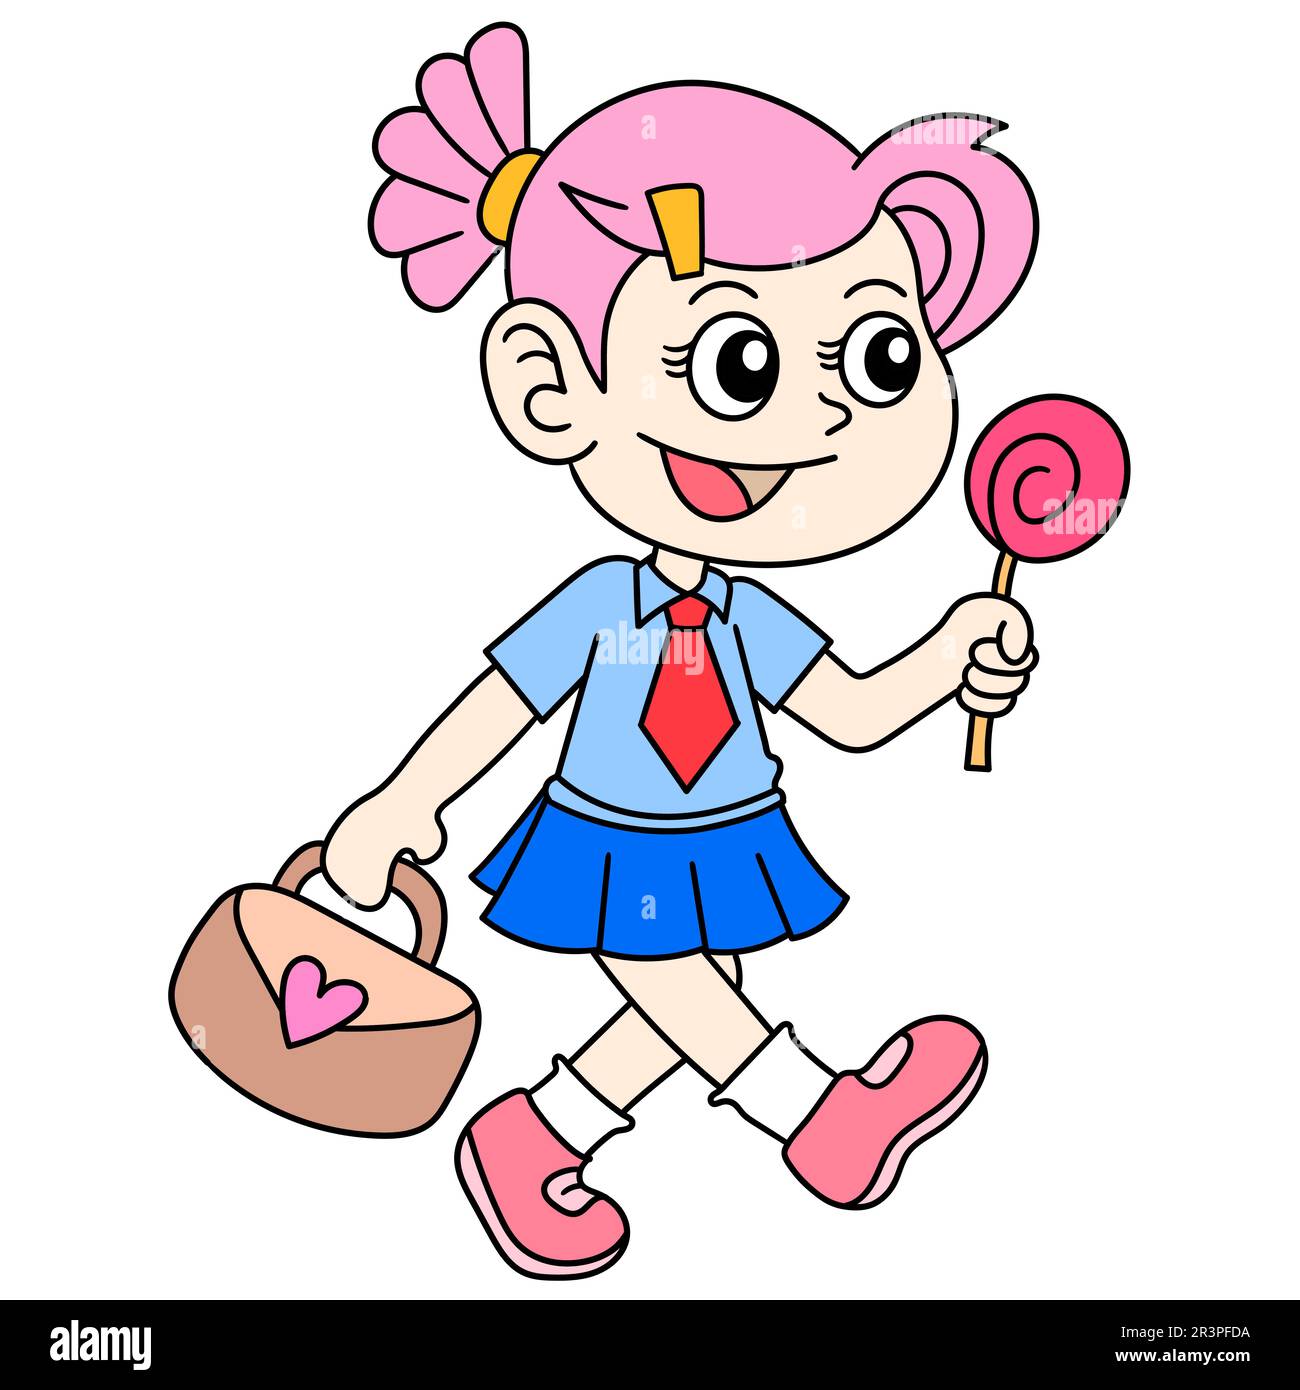 Una ragazza sta camminando a casa dalla scuola trasportando un lecca, kawaii del doodle. immagine dell'icona di doodle Foto Stock